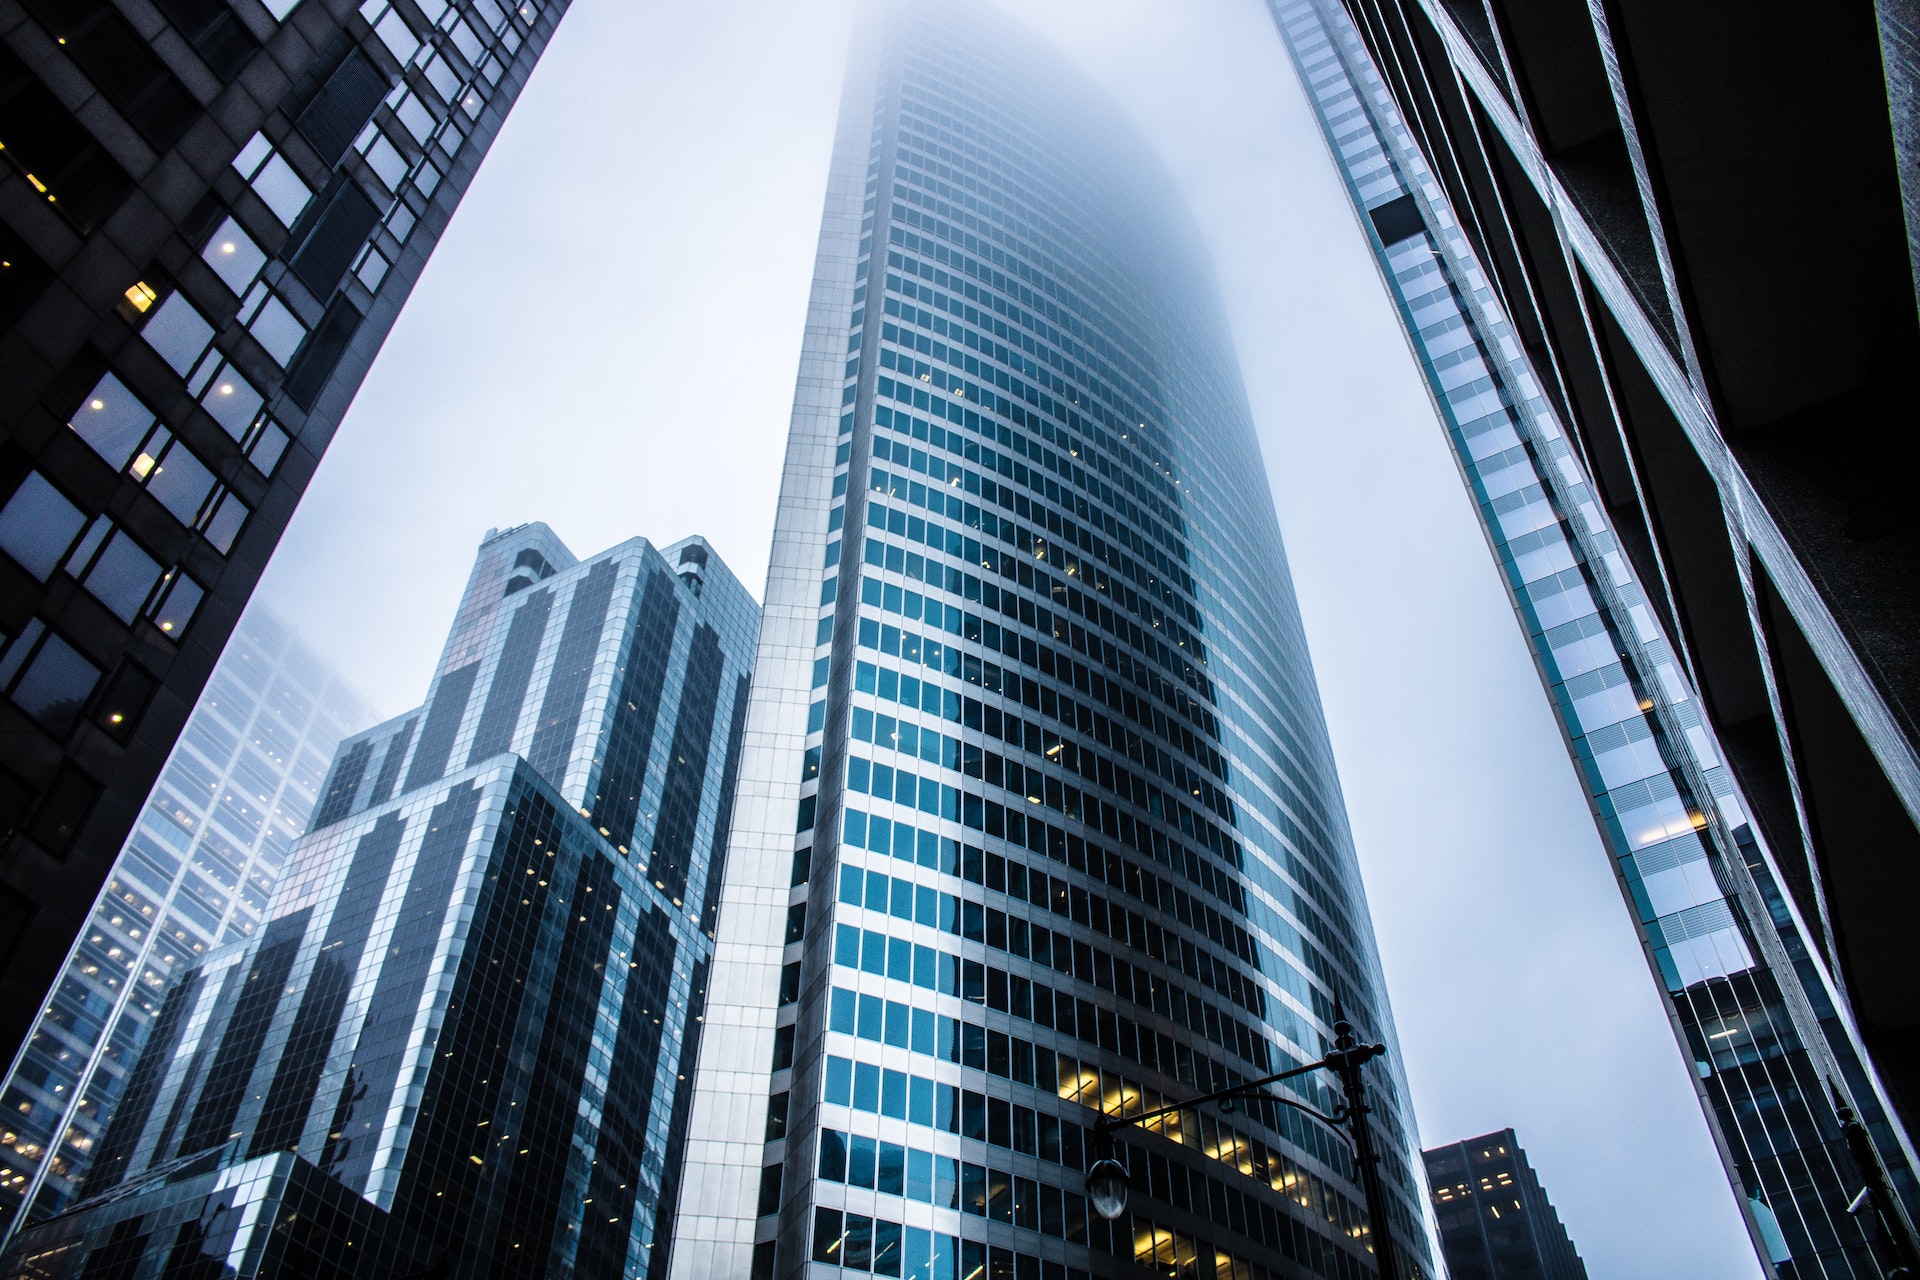 Gray High Rise Buildings, representing CFTC's Self-Reporting Program